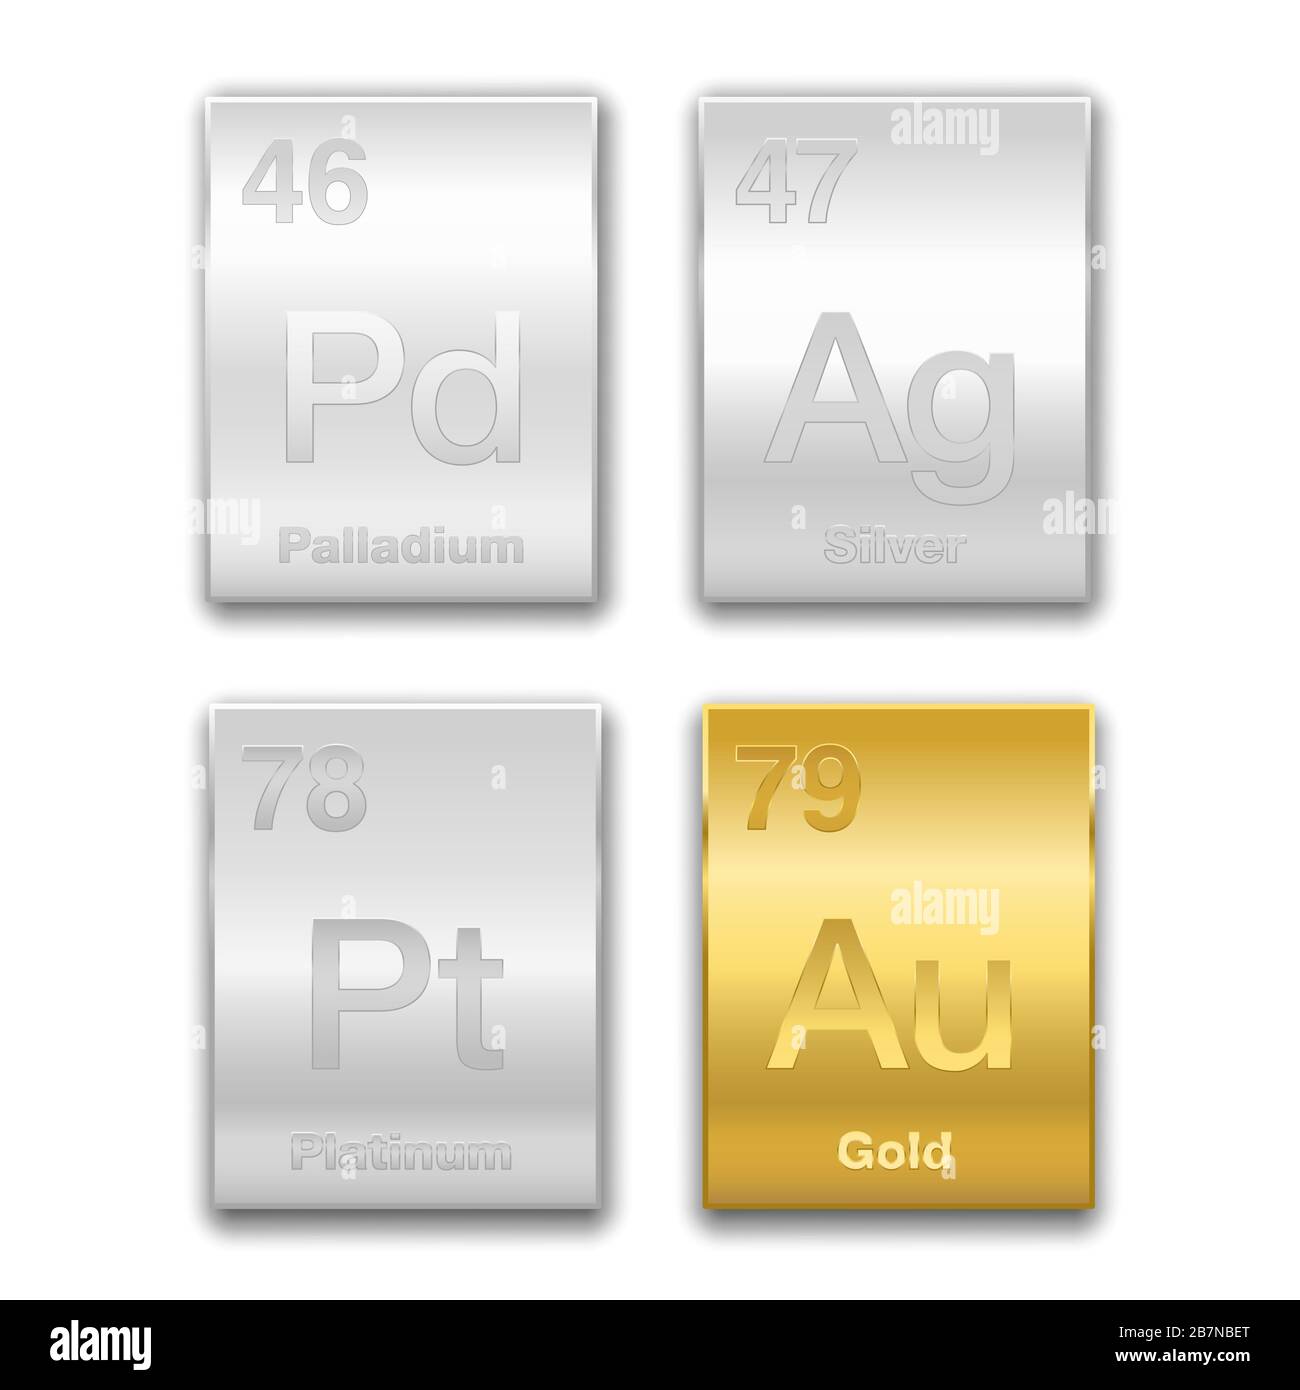 Oro, argento, platino, palladio su tavola periodica. Metalli preziosi, elementi chimici ad alto valore economico. Simboli e numeri atomici. Foto Stock